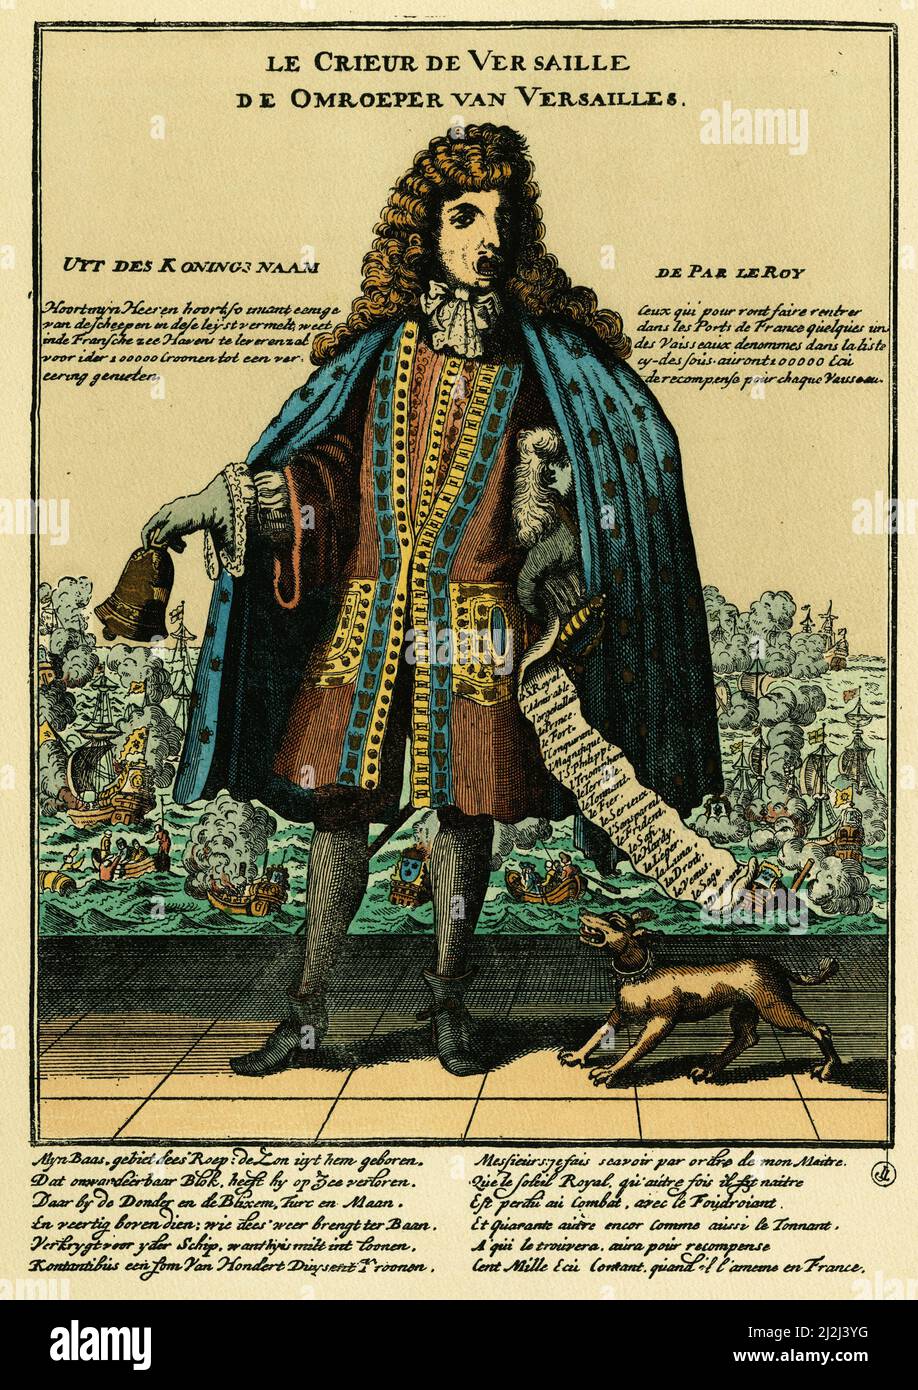 Le crieur de Versailles, estampe satirique hollandaise contre Louis XIV ( 1638-1715), le crieur a trait a la bataille de la Hougue ou la flotte francaise fut battue et en partie detruite, le 29 mai 1692 . Foto Stock